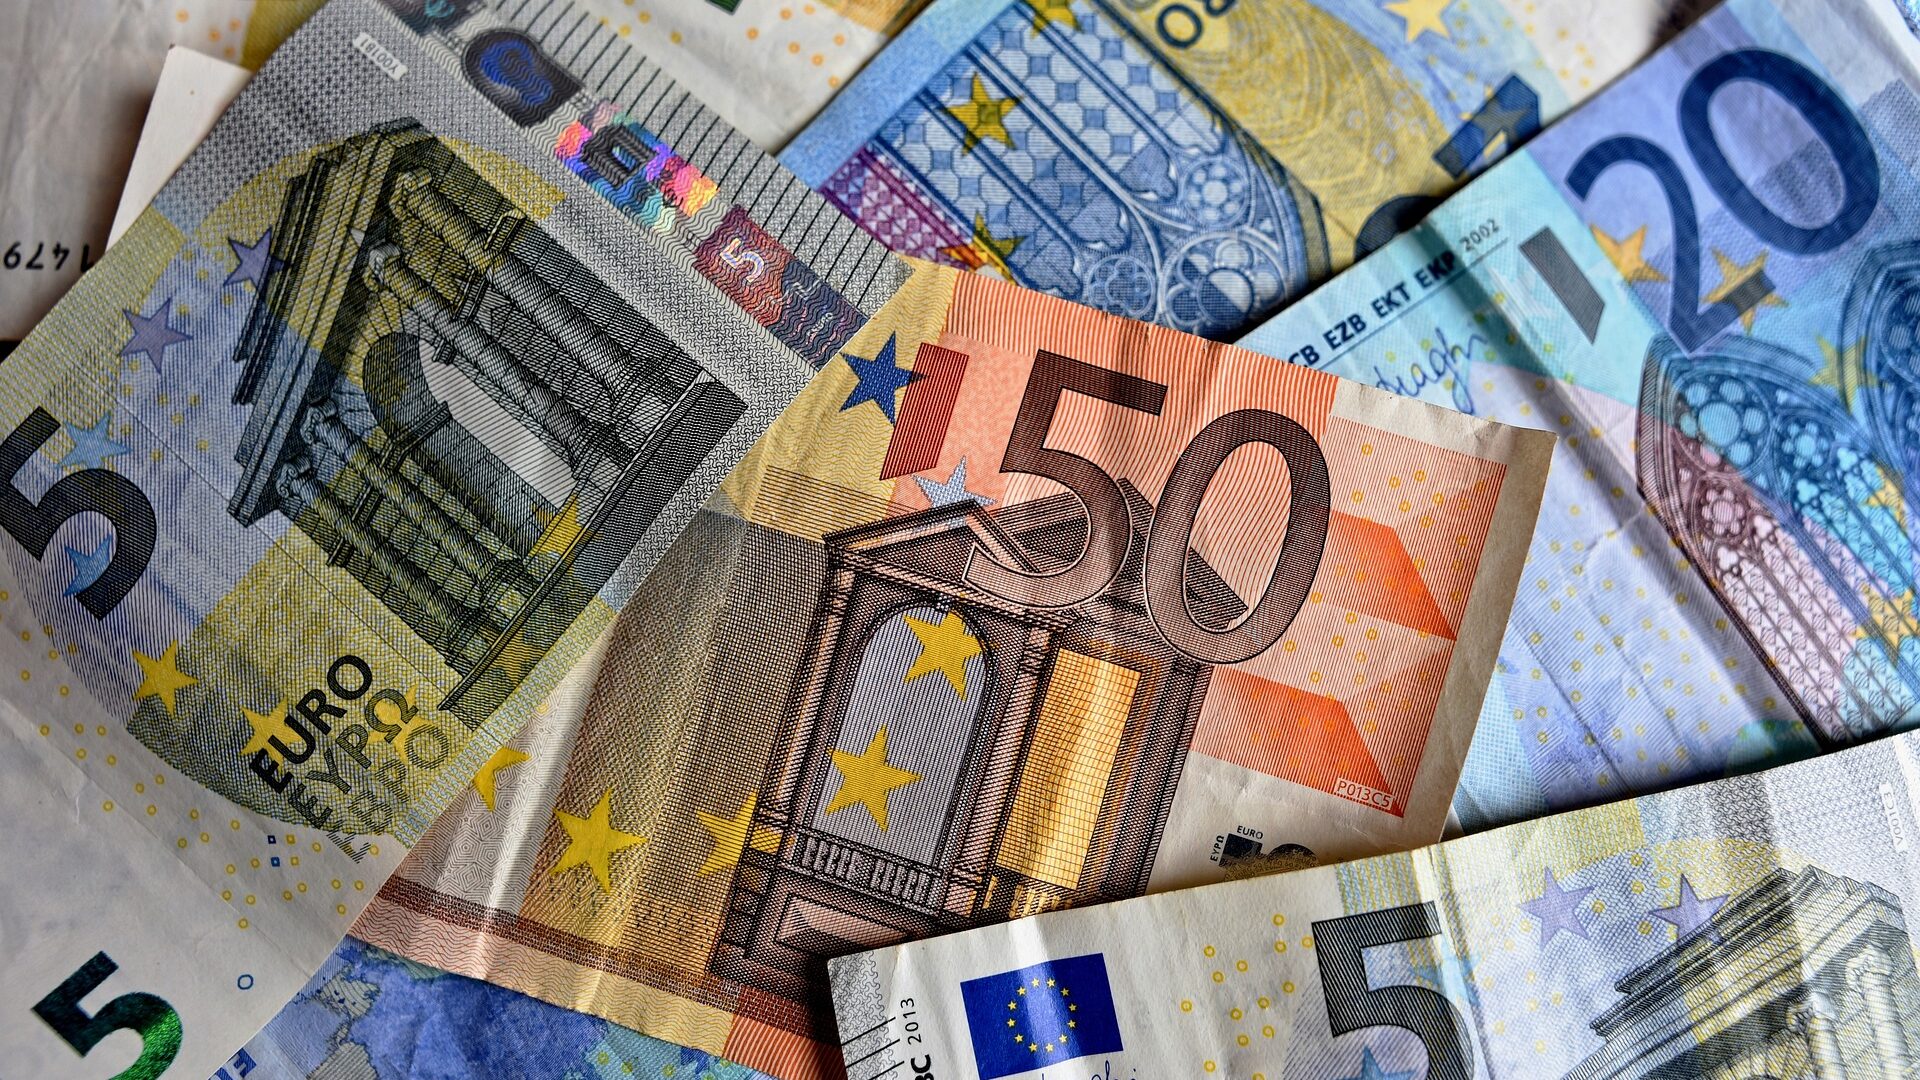 Schnell Mitglied werden und 40 Euro sparen